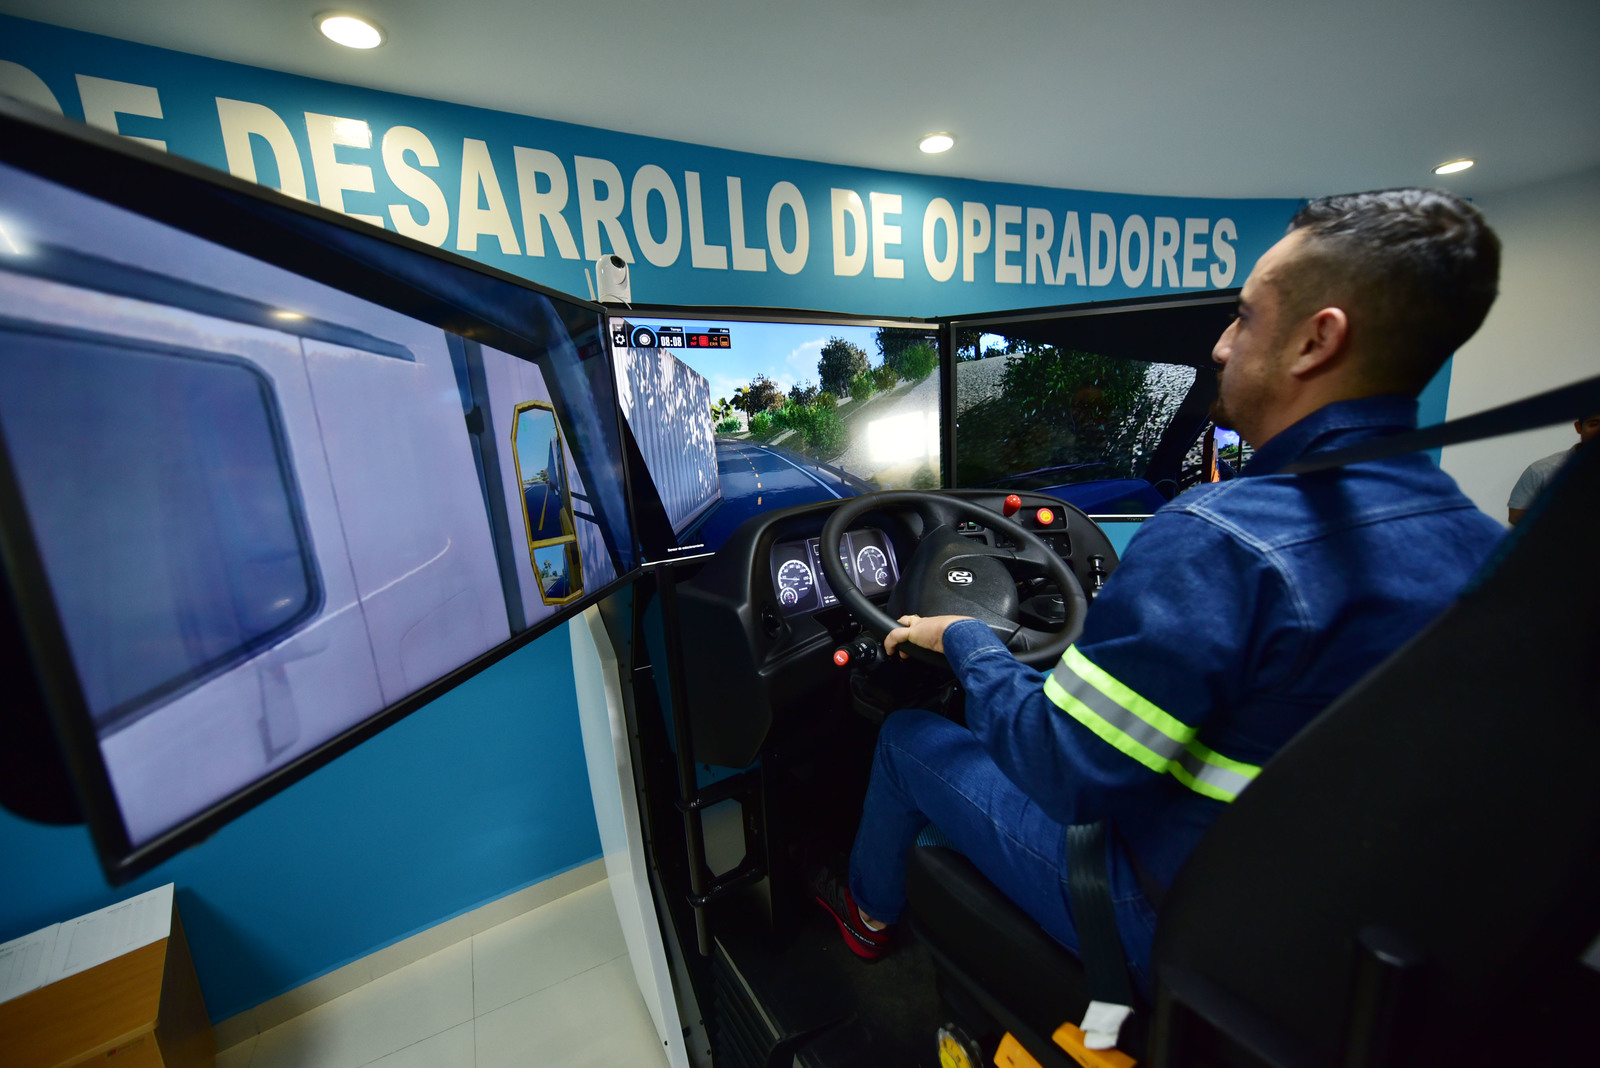 El objetivo que se tiene con este centro es profesionalizar a los operadores en el manejo de pipas o camiones de doble carga, ya que no pueden ser manejados por cualquier persona, señaló González.